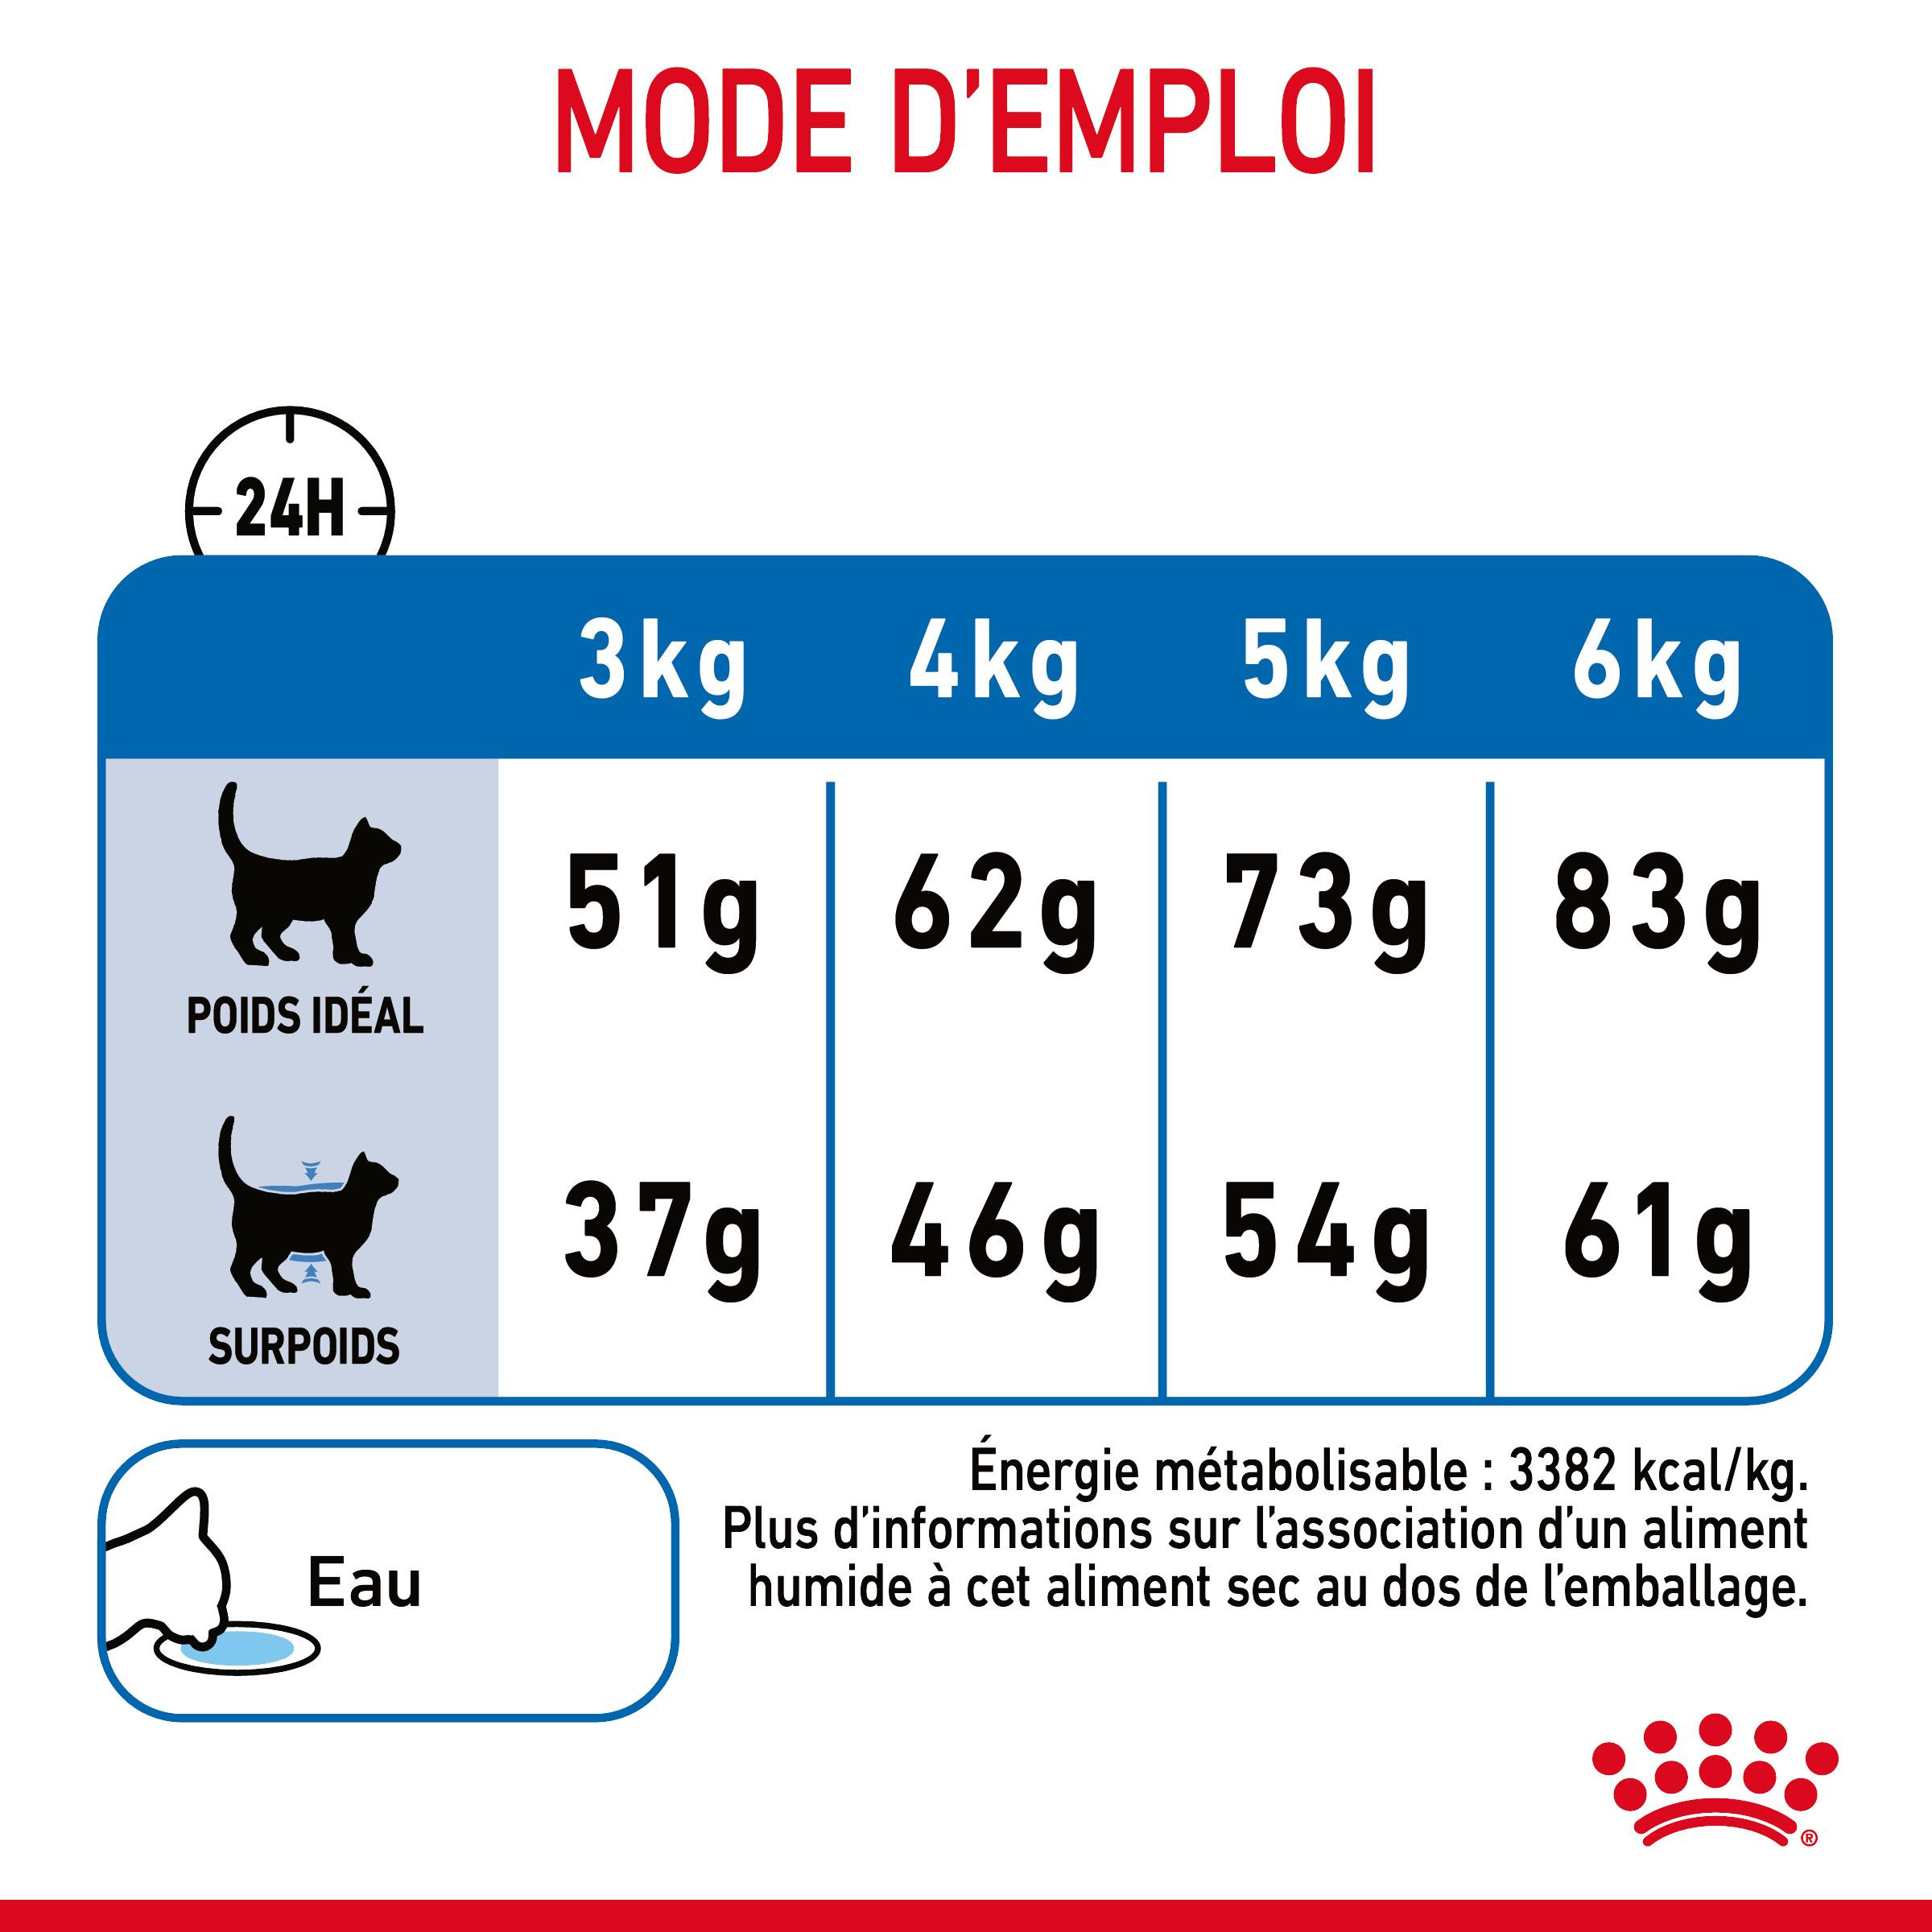 Royal Canin Light Weight Care kattenvoer